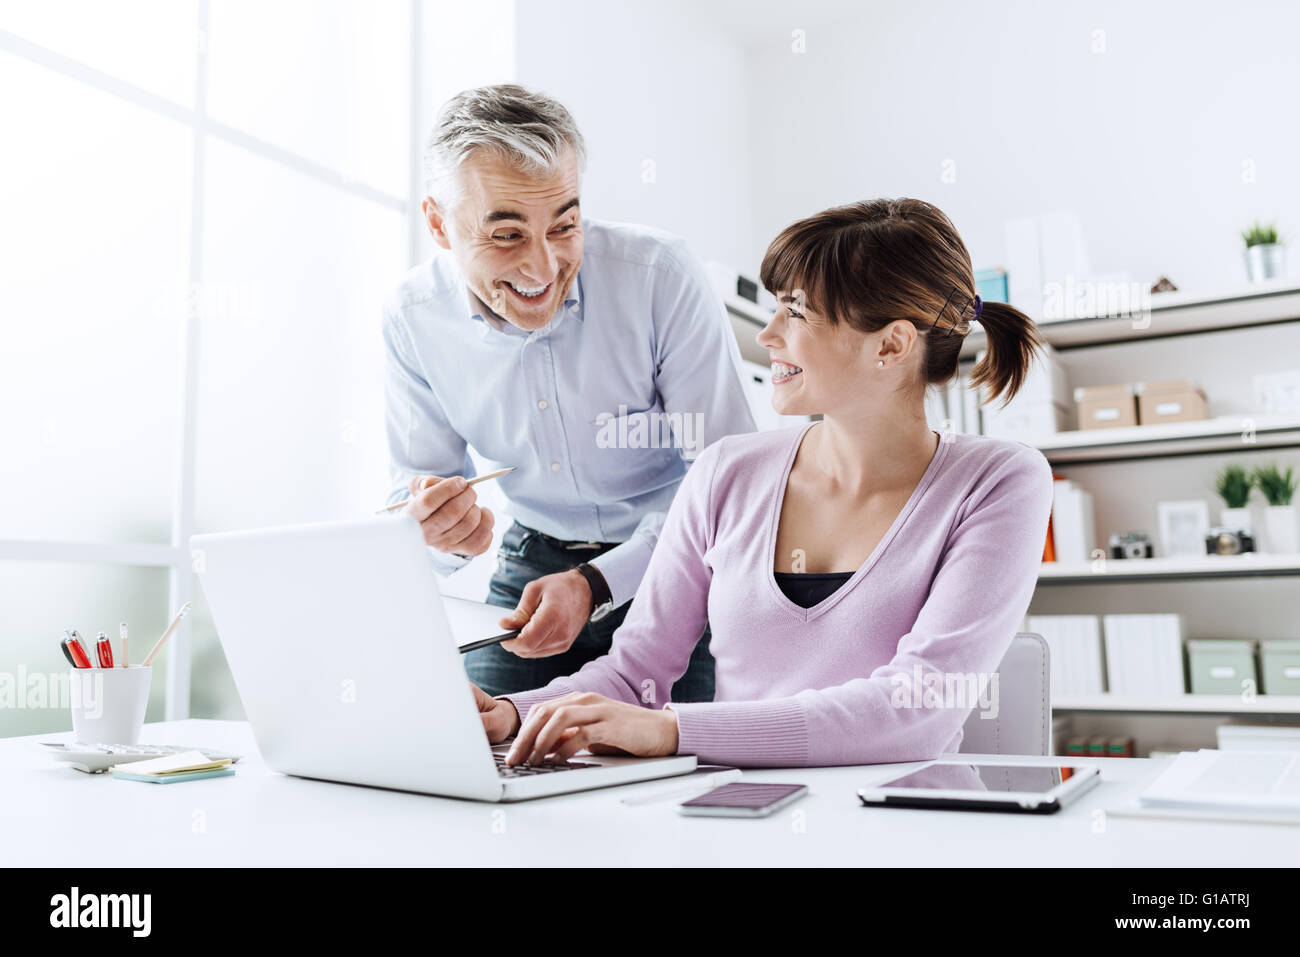 Cheerful des gens d'affaires de l'office, ils travaillent ensemble et souriant, la femme est la saisie sur un ordinateur portable Banque D'Images